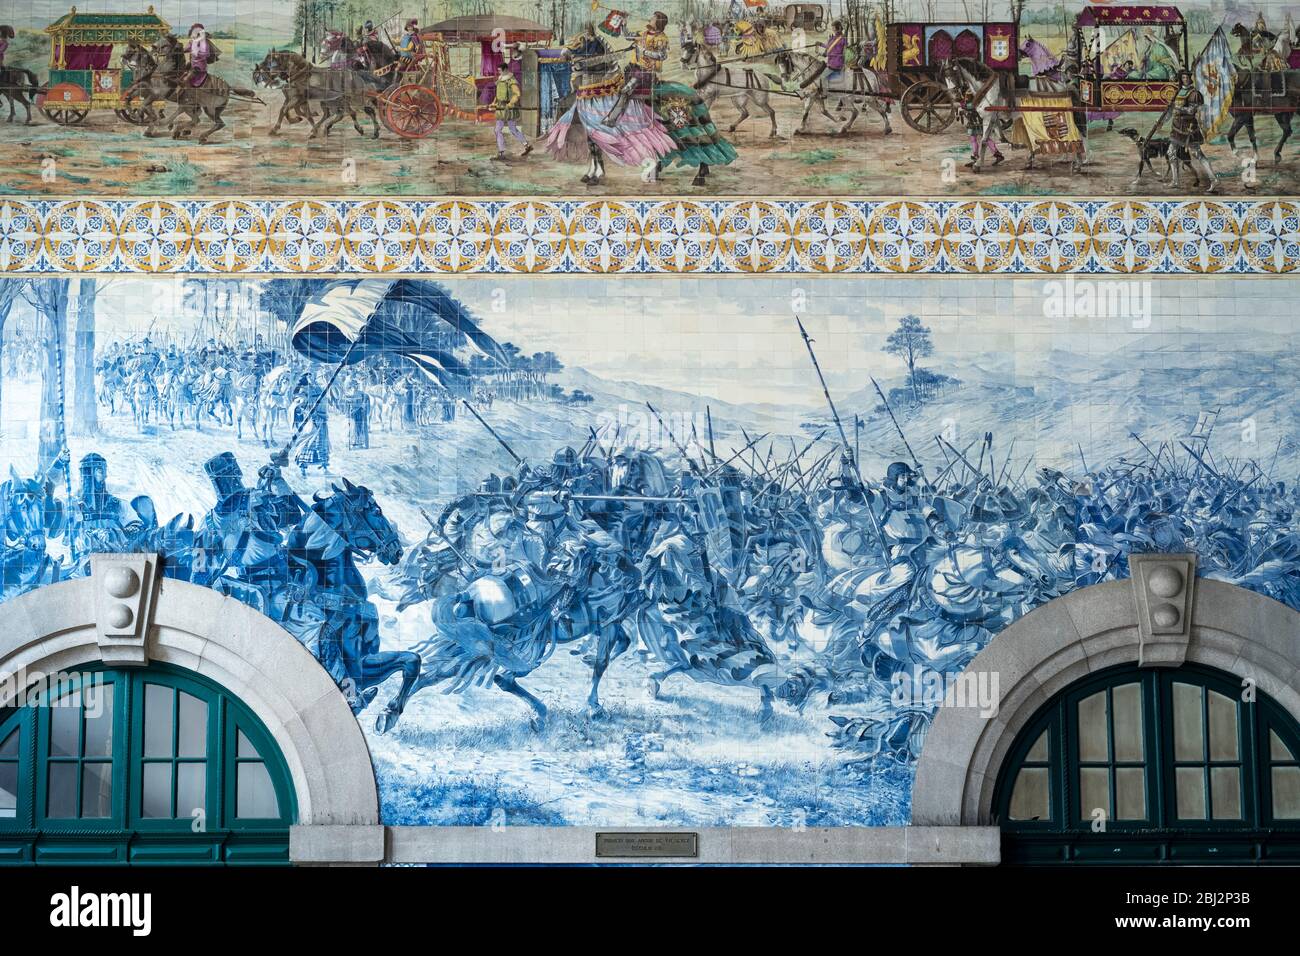 Dettaglio delle famose piastrelle azulejos tradizionali portoghesi blu e bianche pareti stazione ferroviaria Sao Bento a Porto, Portogallo Foto Stock